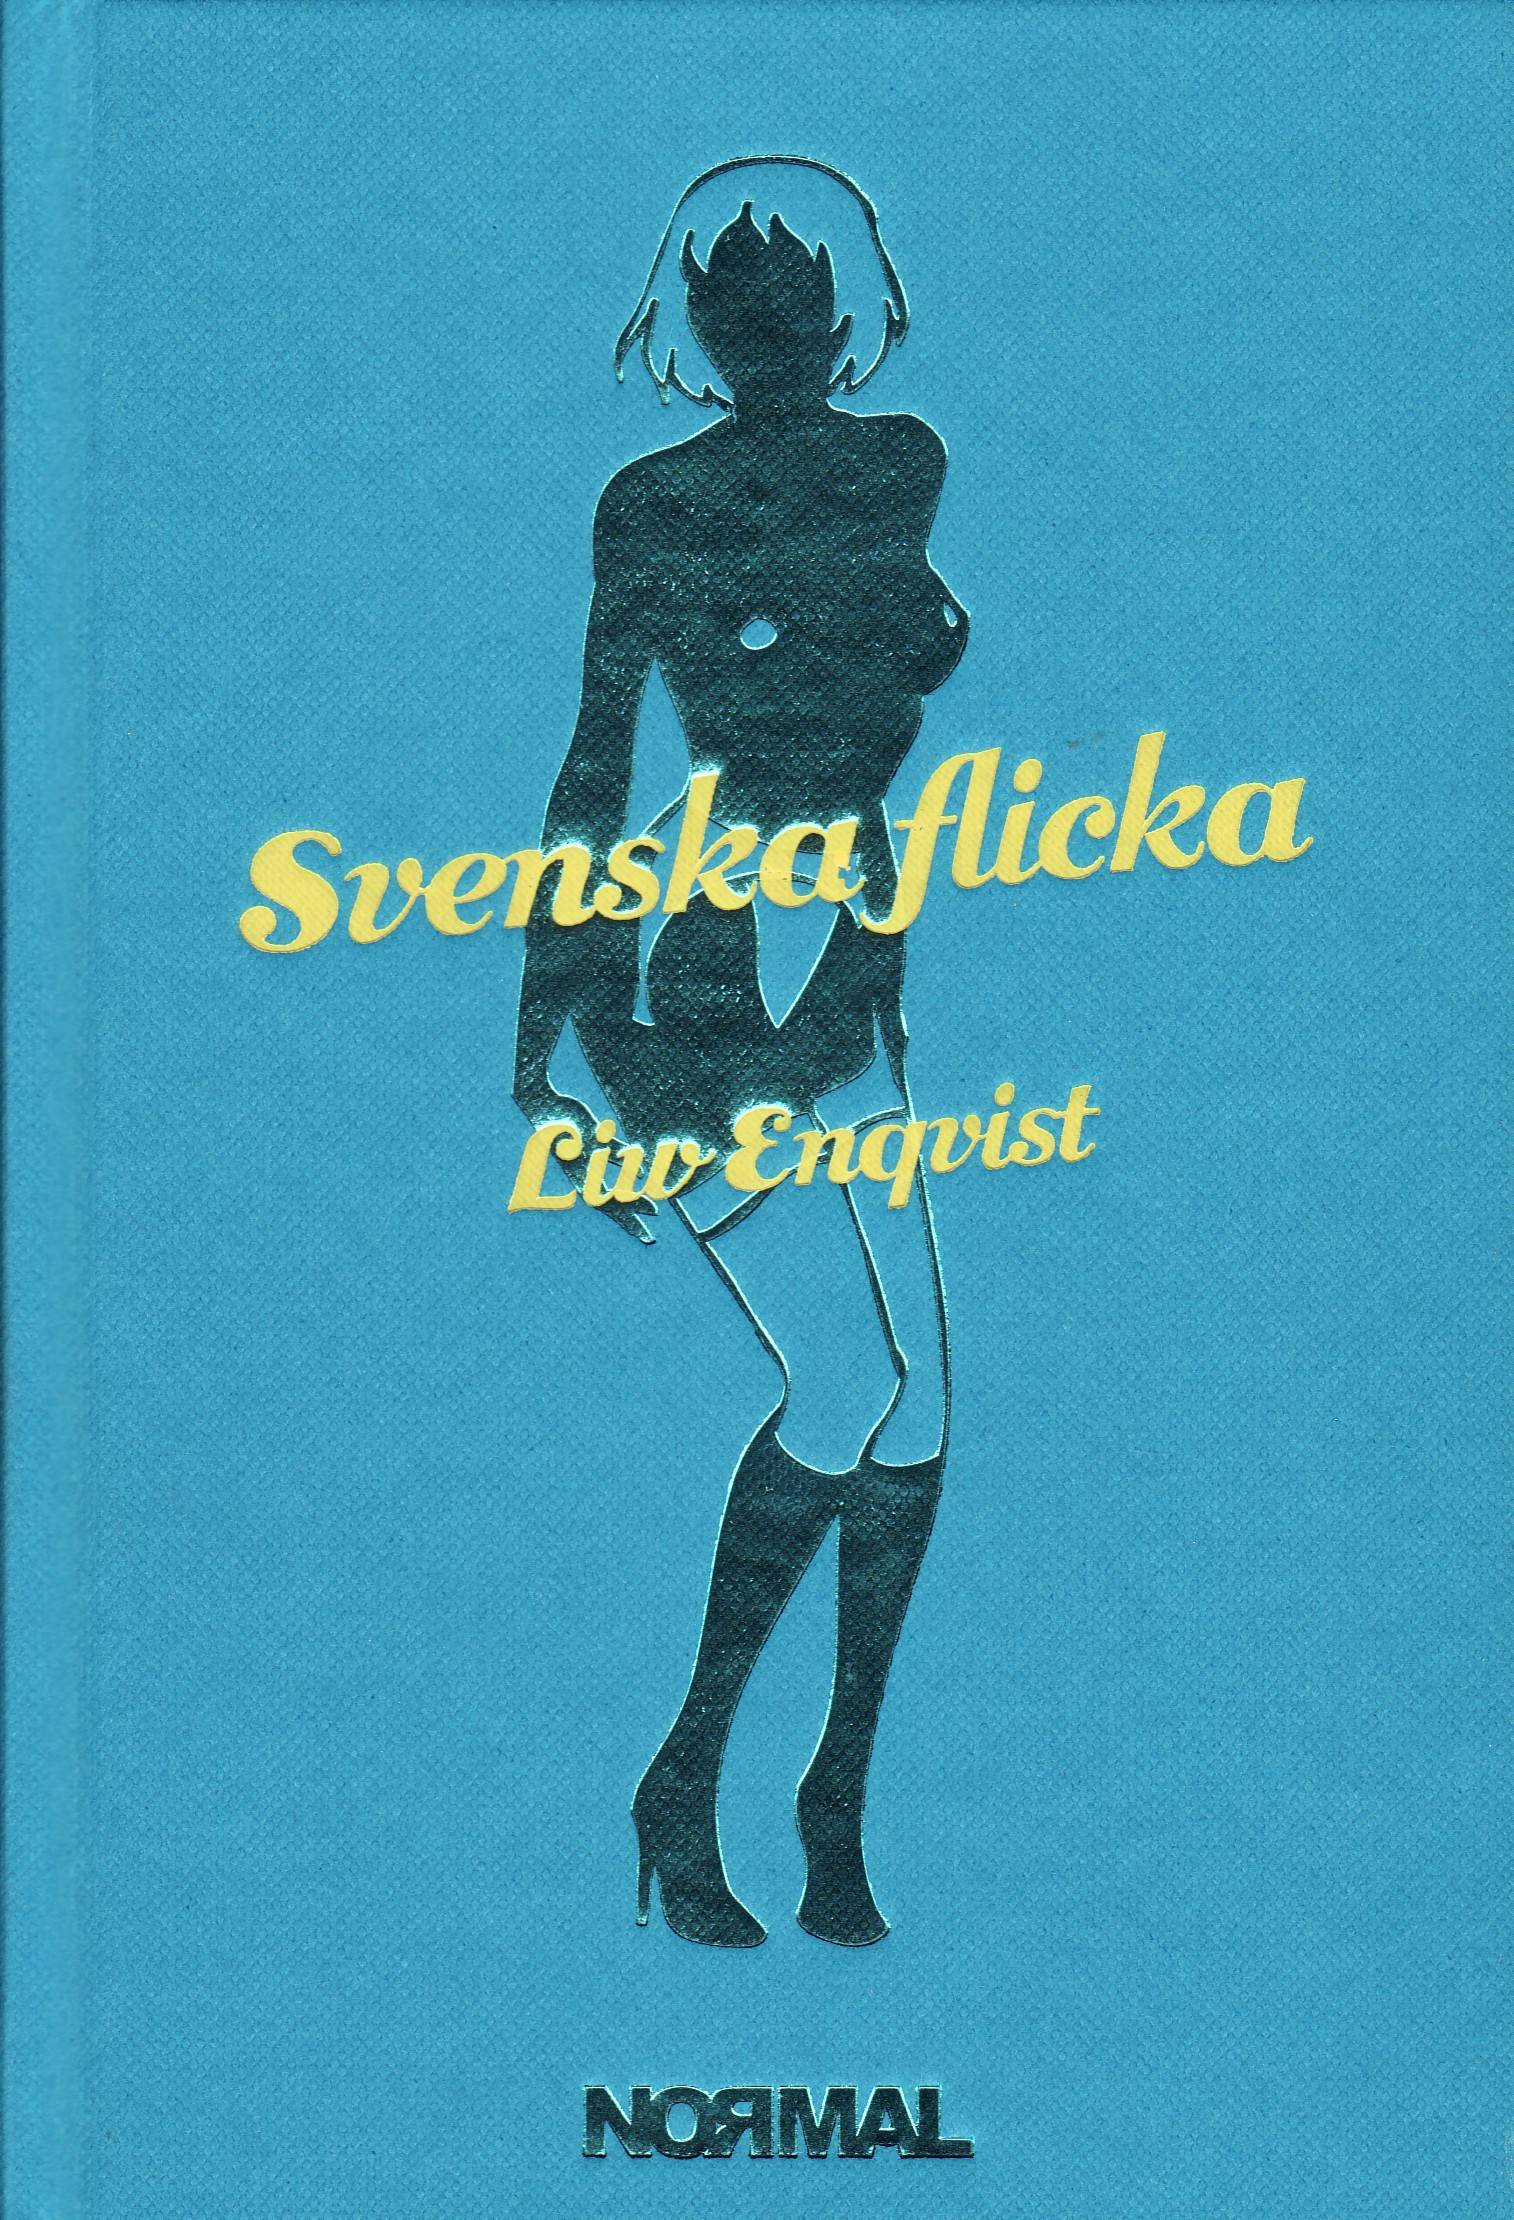 Svenska flicka